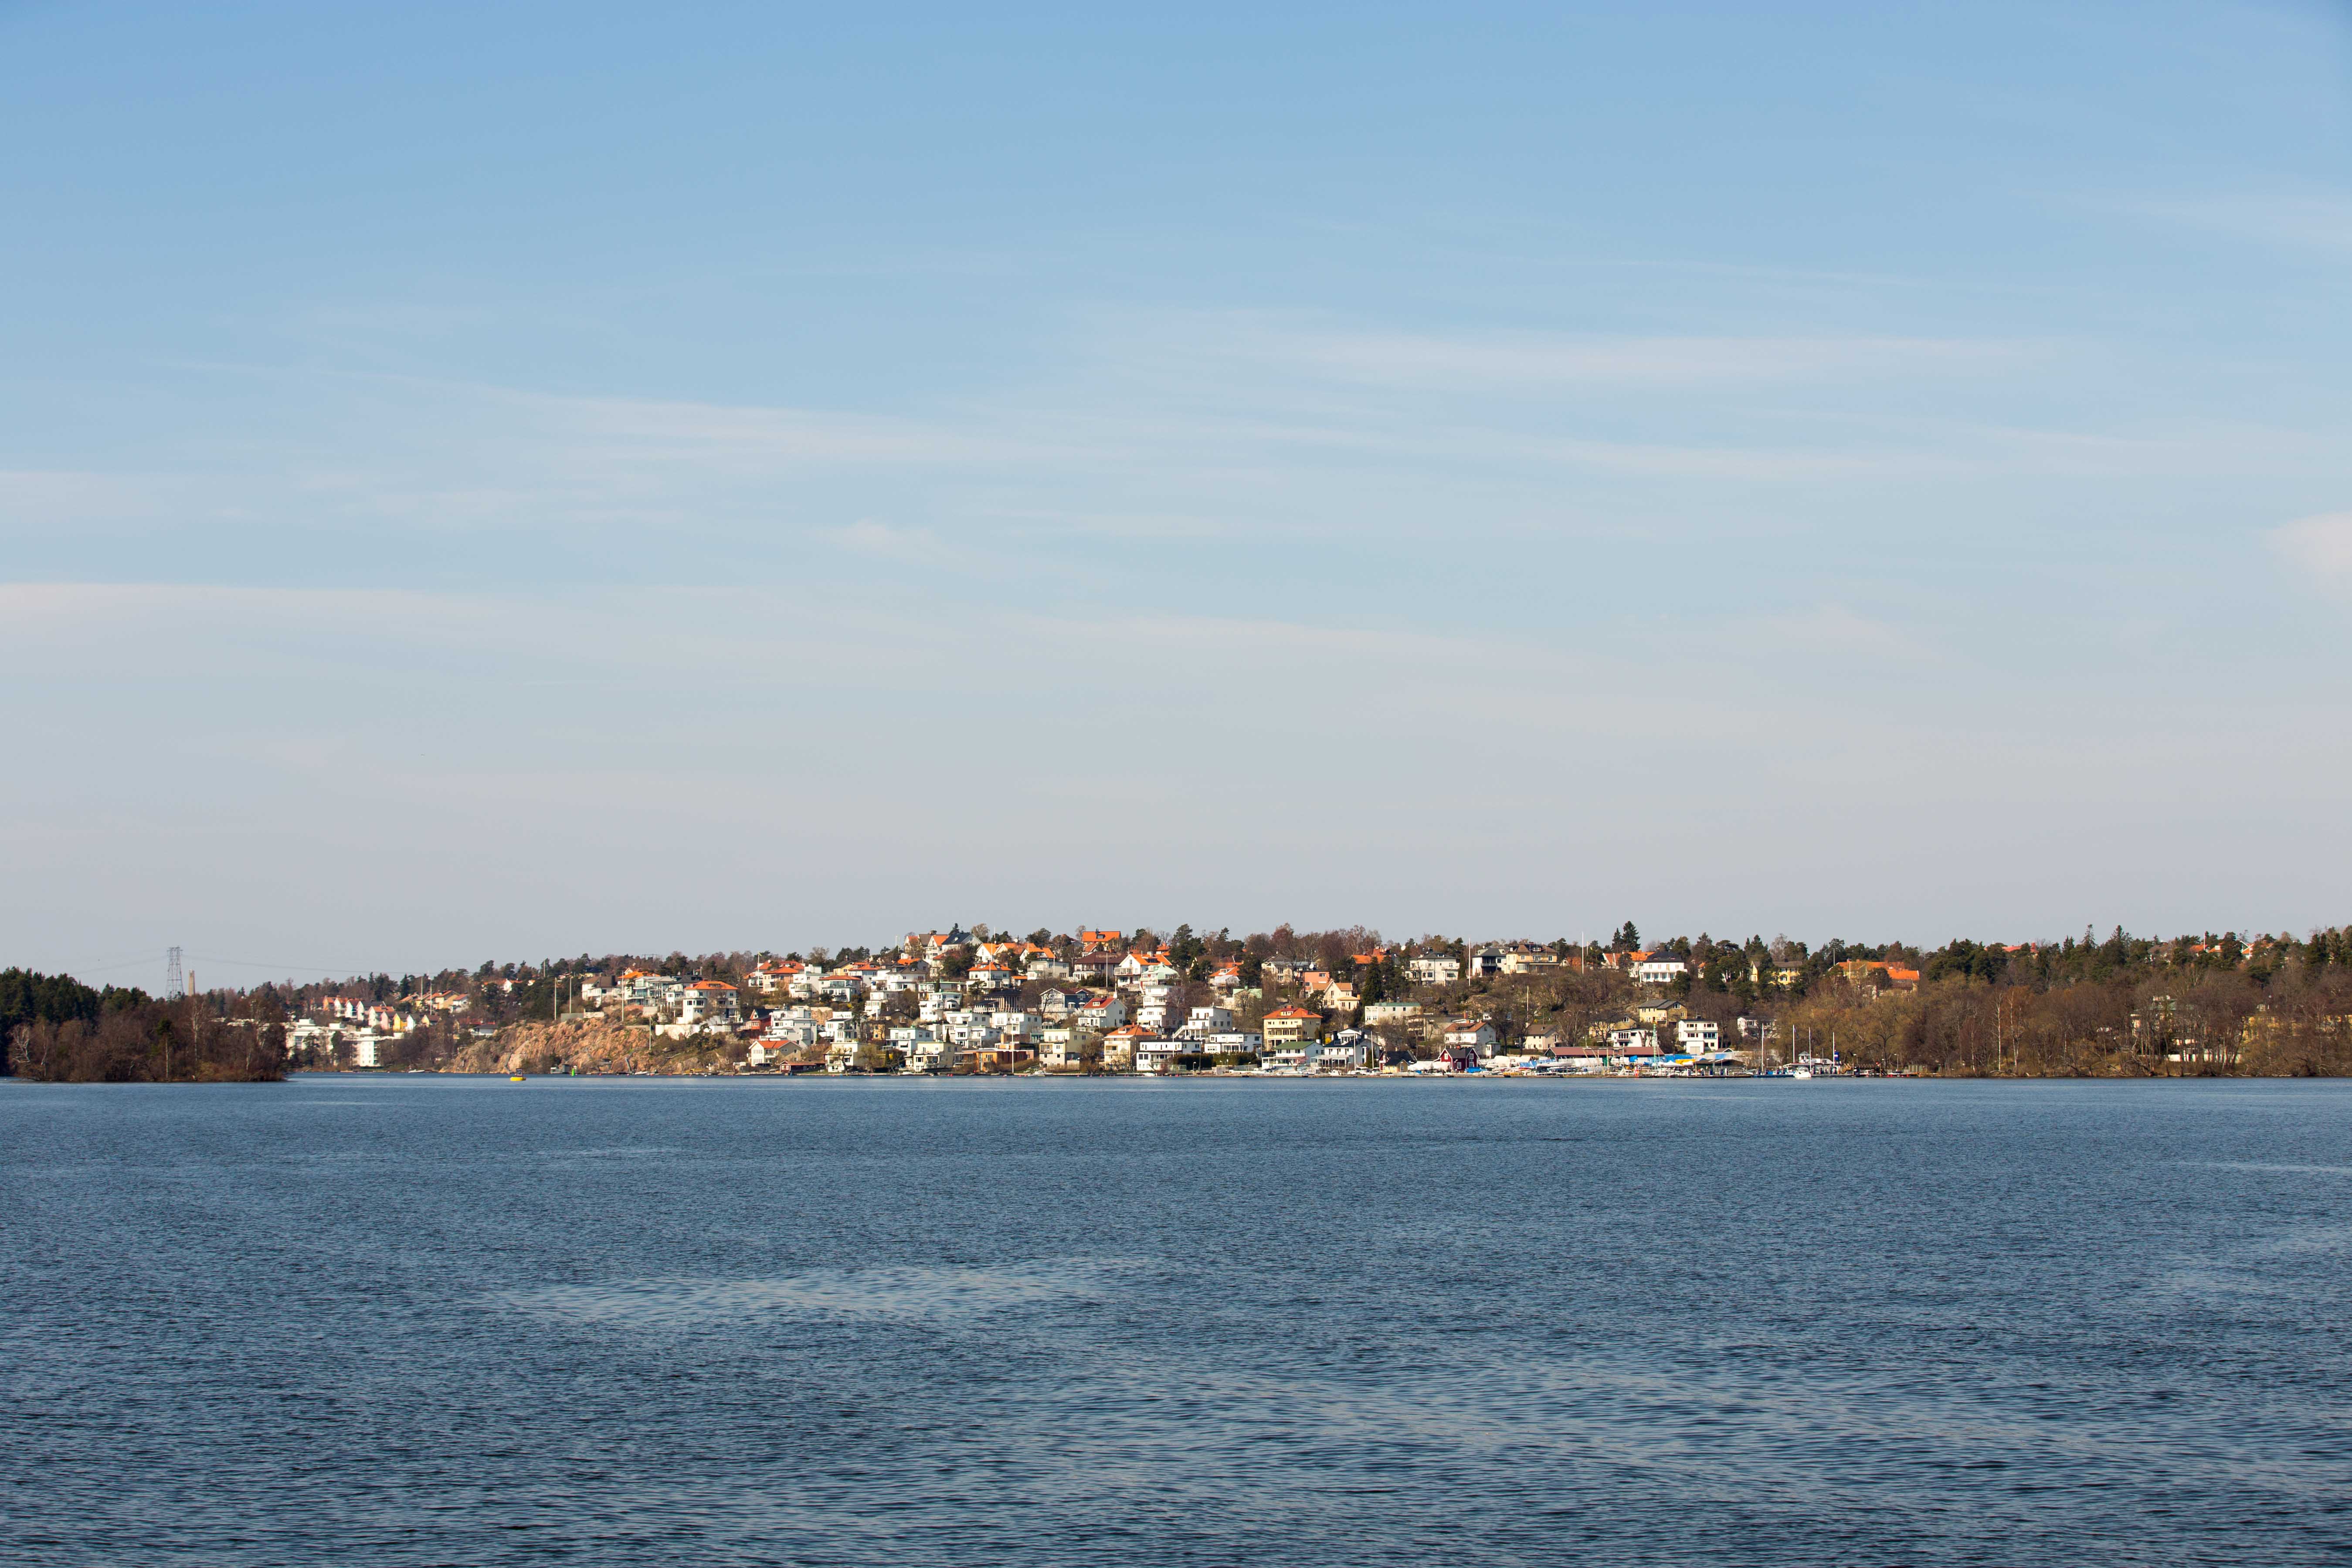 Croisiere Lac Malar Ferry Citytrip Stockholm Suede Drottningholm